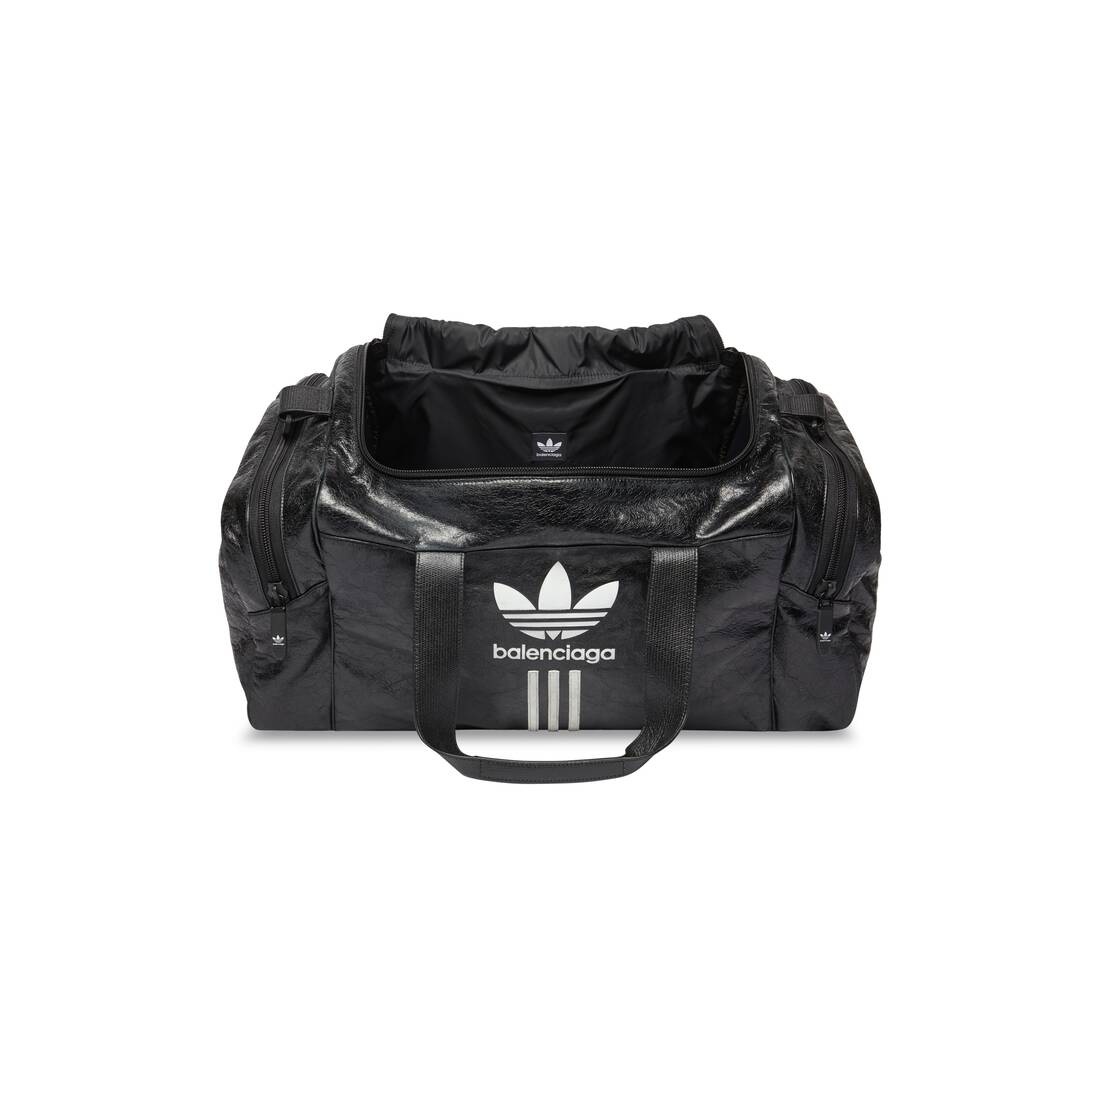 Men's Balenciaga / Adidas Gym Bag  in Black - 5